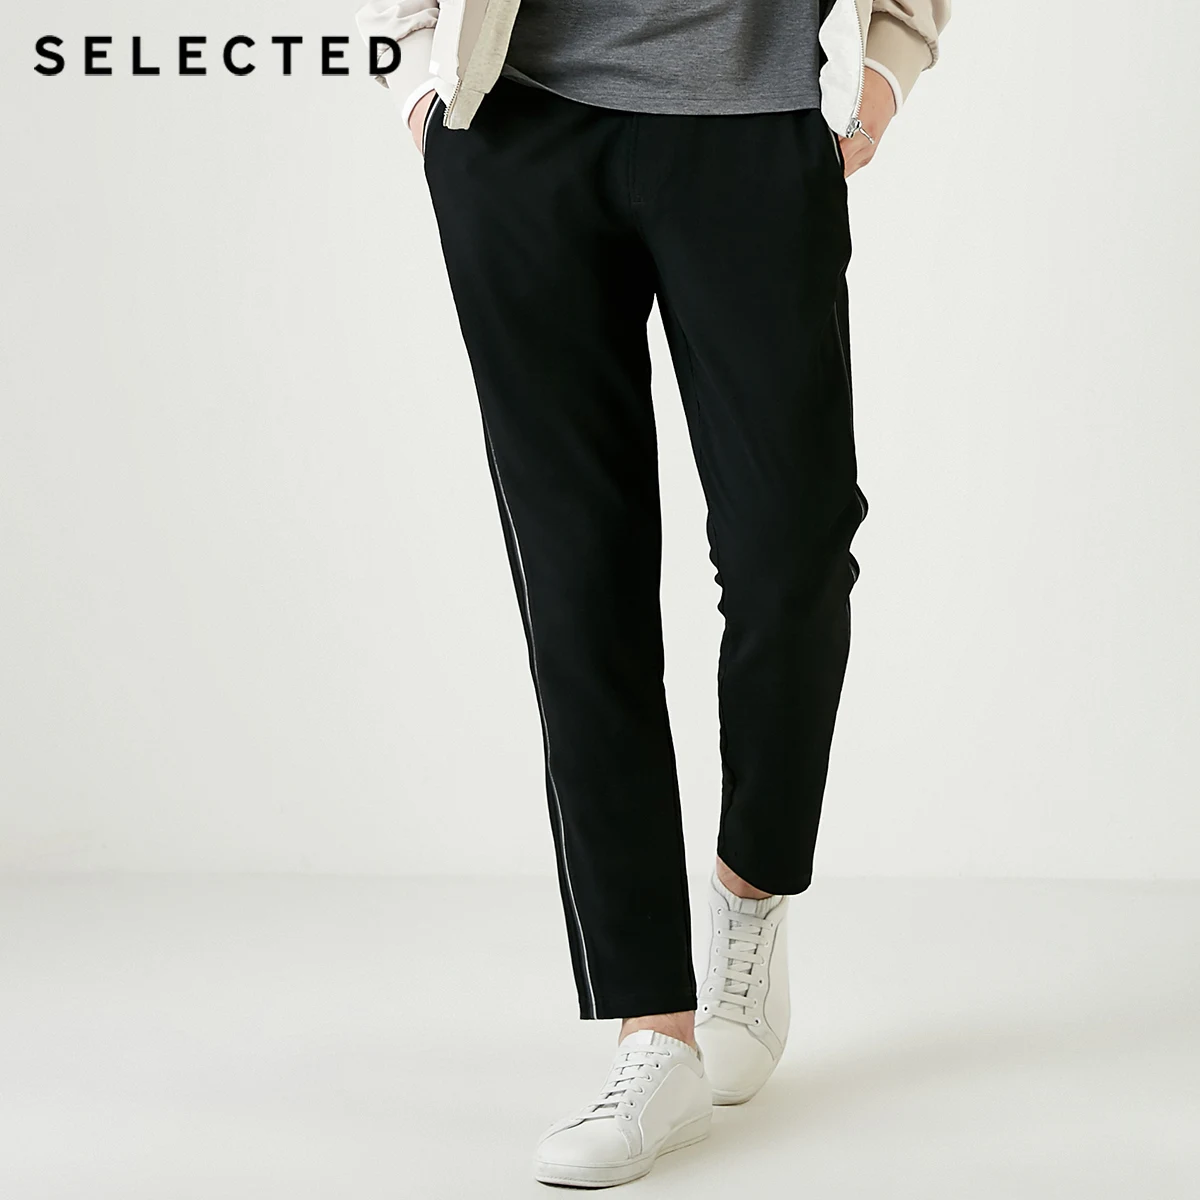 Выбранные Для Мужчин's стретчевое облегающее свободного кроя штаны-шаровары брюки для девочек Размеры S | 419114502